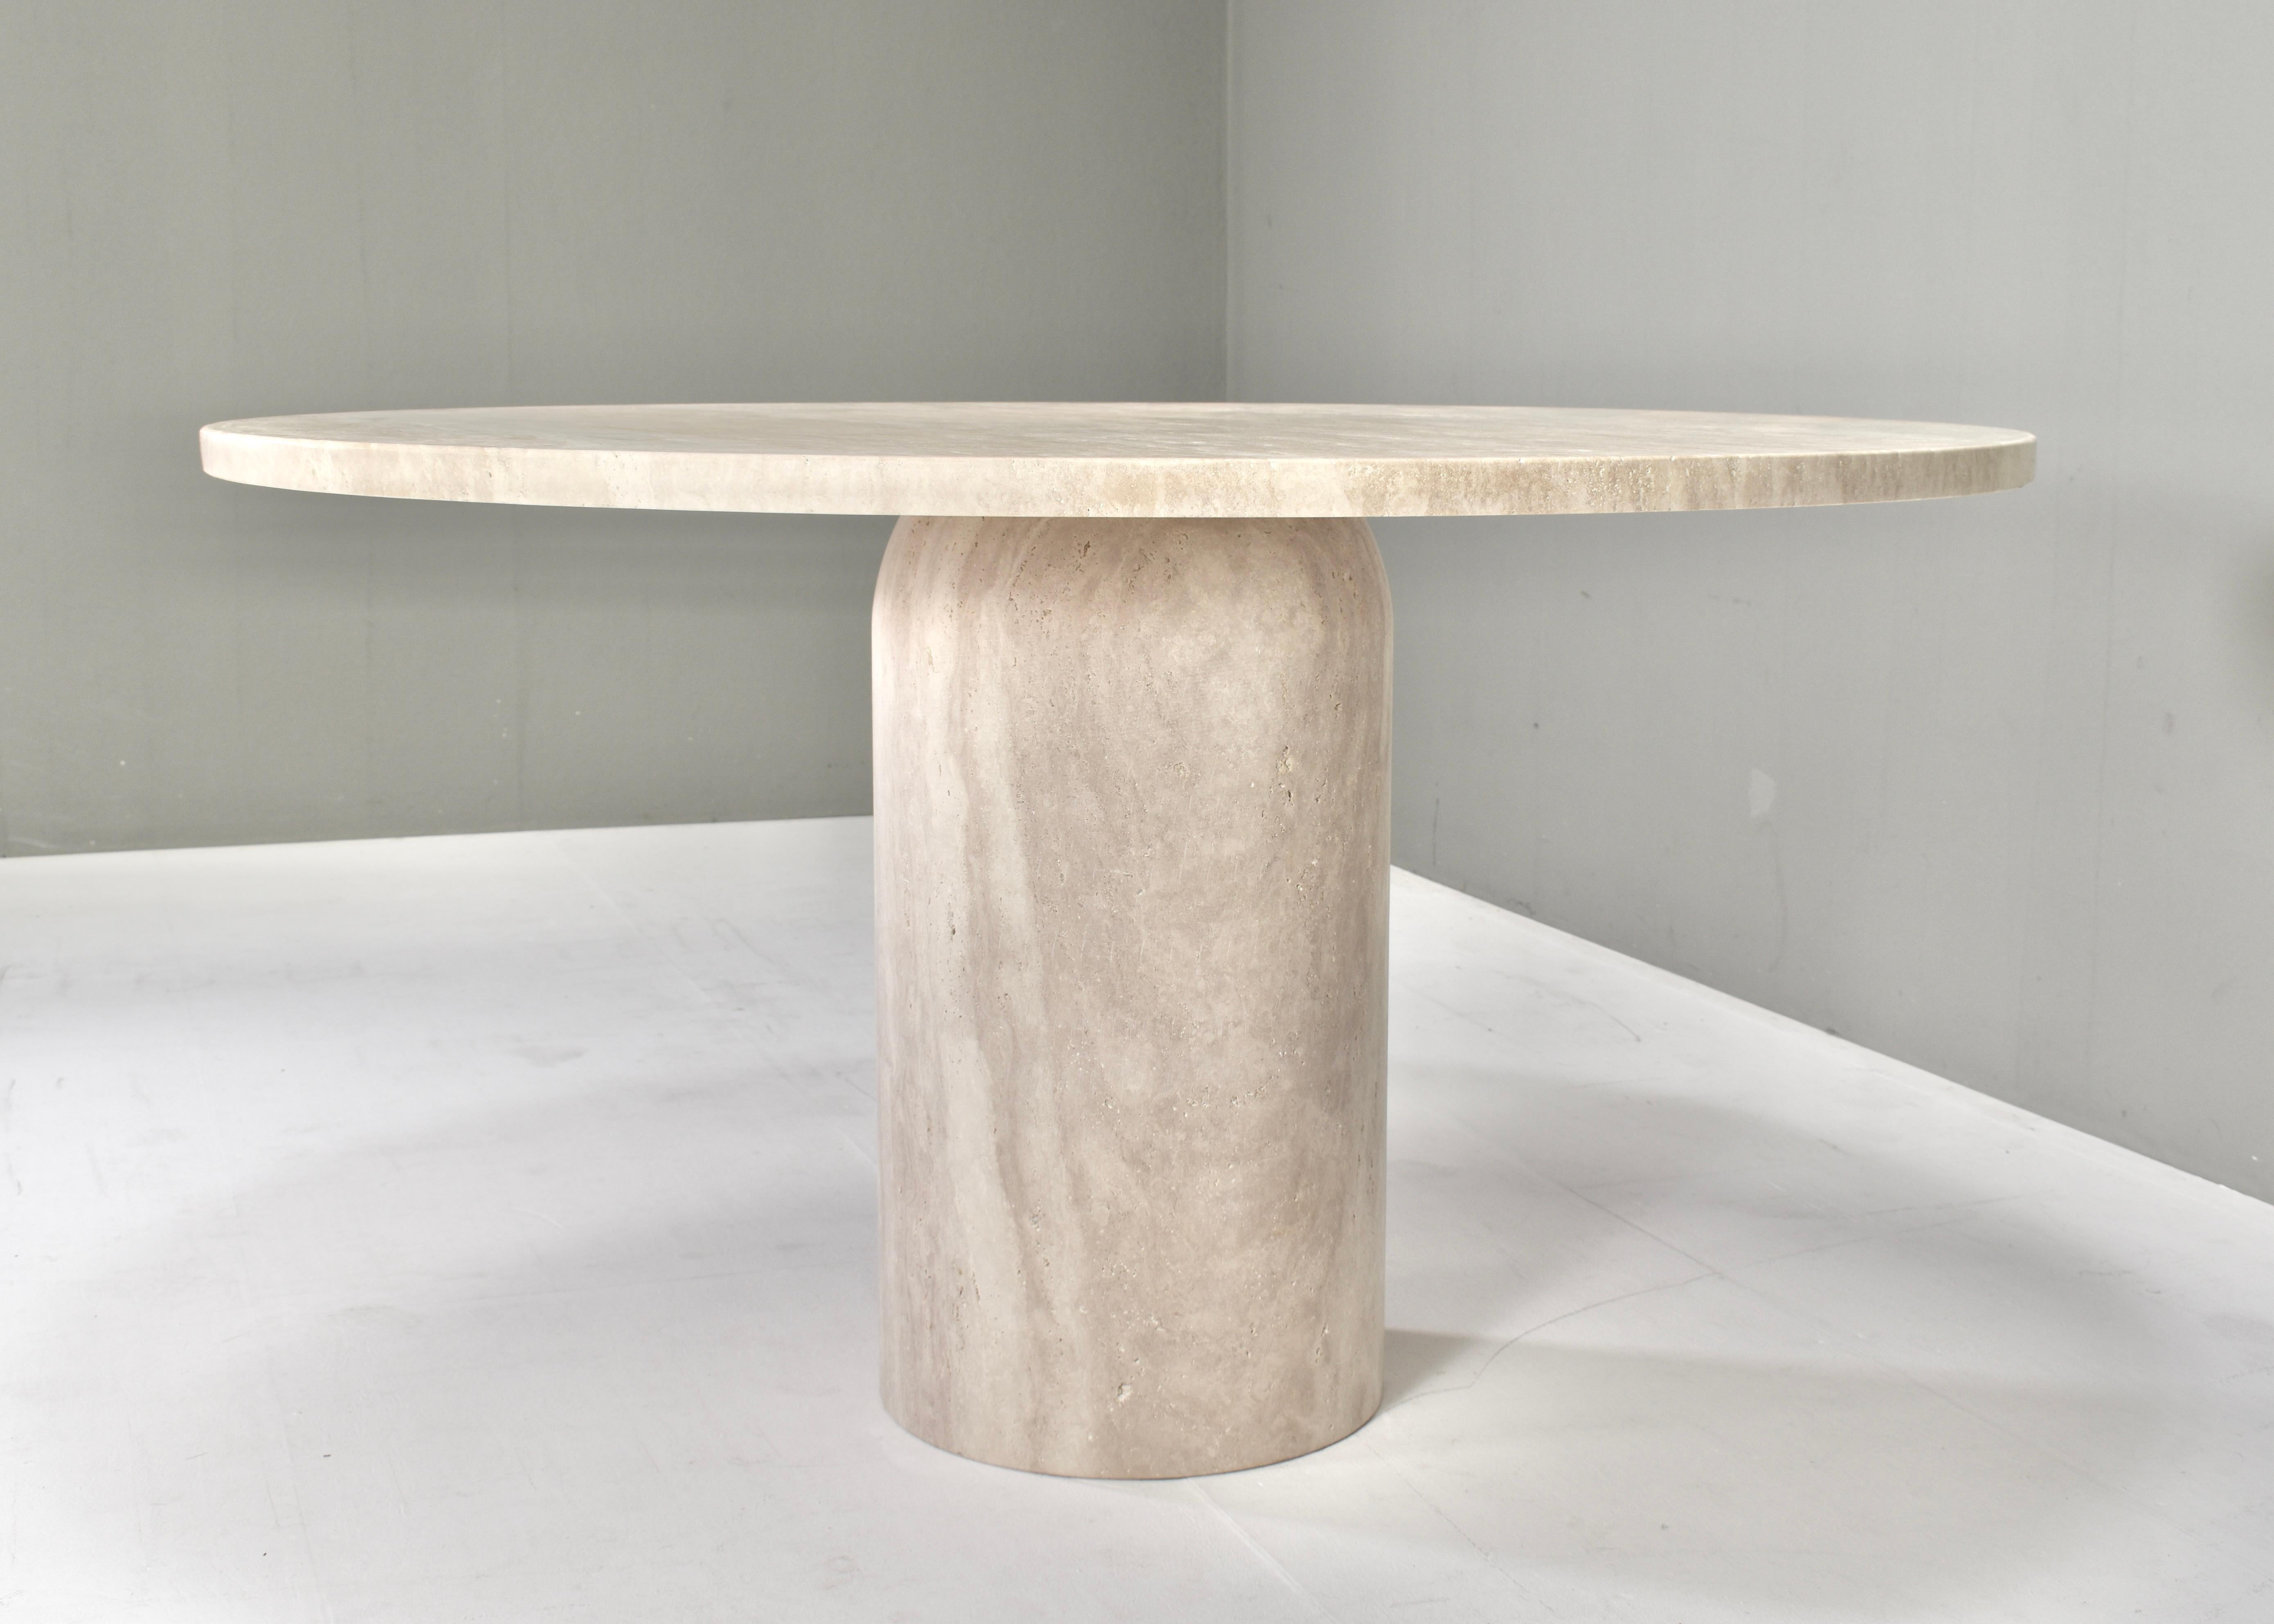 Voici cette exquise table à manger ronde en travertin - Elegance dans le manoir de Up&Up, Angelo Mangiarotti et Kelly Wearstler.
Design/One : à la manière de Kelly Wearstler
Fabricant : à la manière d'Up&Up 
Modèle : table à manger ronde
Période de